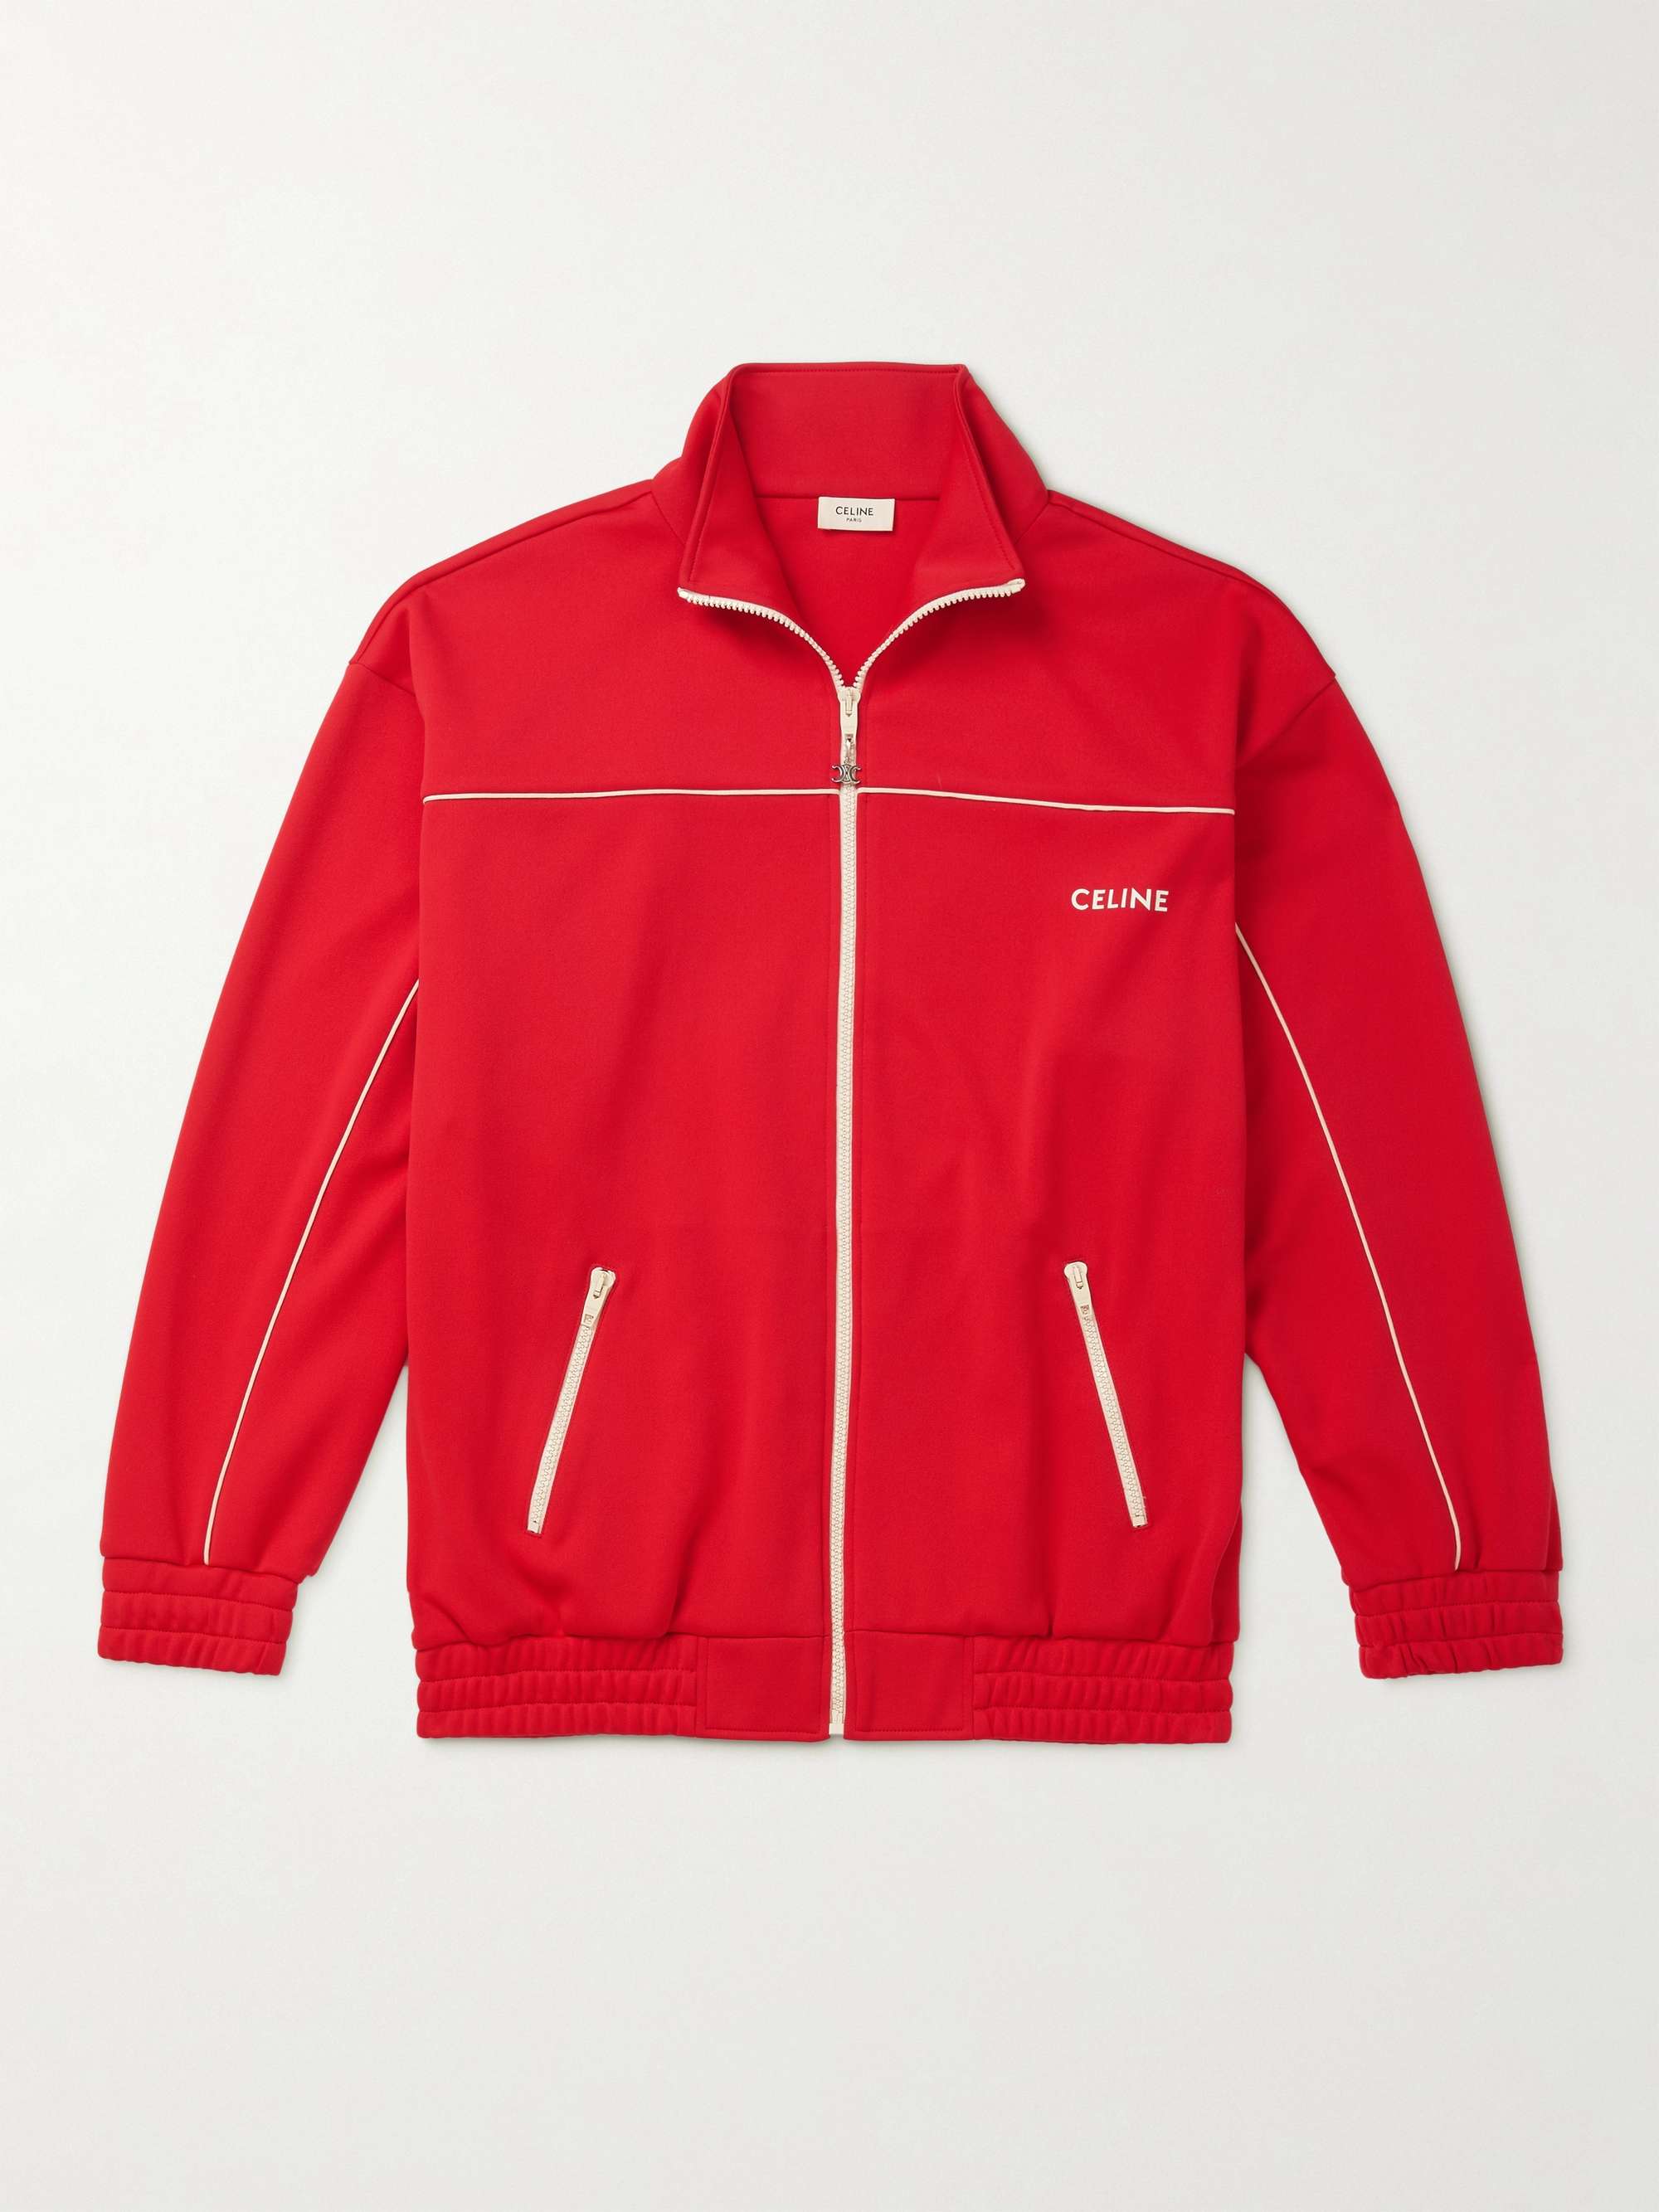 셀린느 옴므 로고 트랙 재킷 CELINE HOMME Logo-Print Jersey Track Jacket,Red